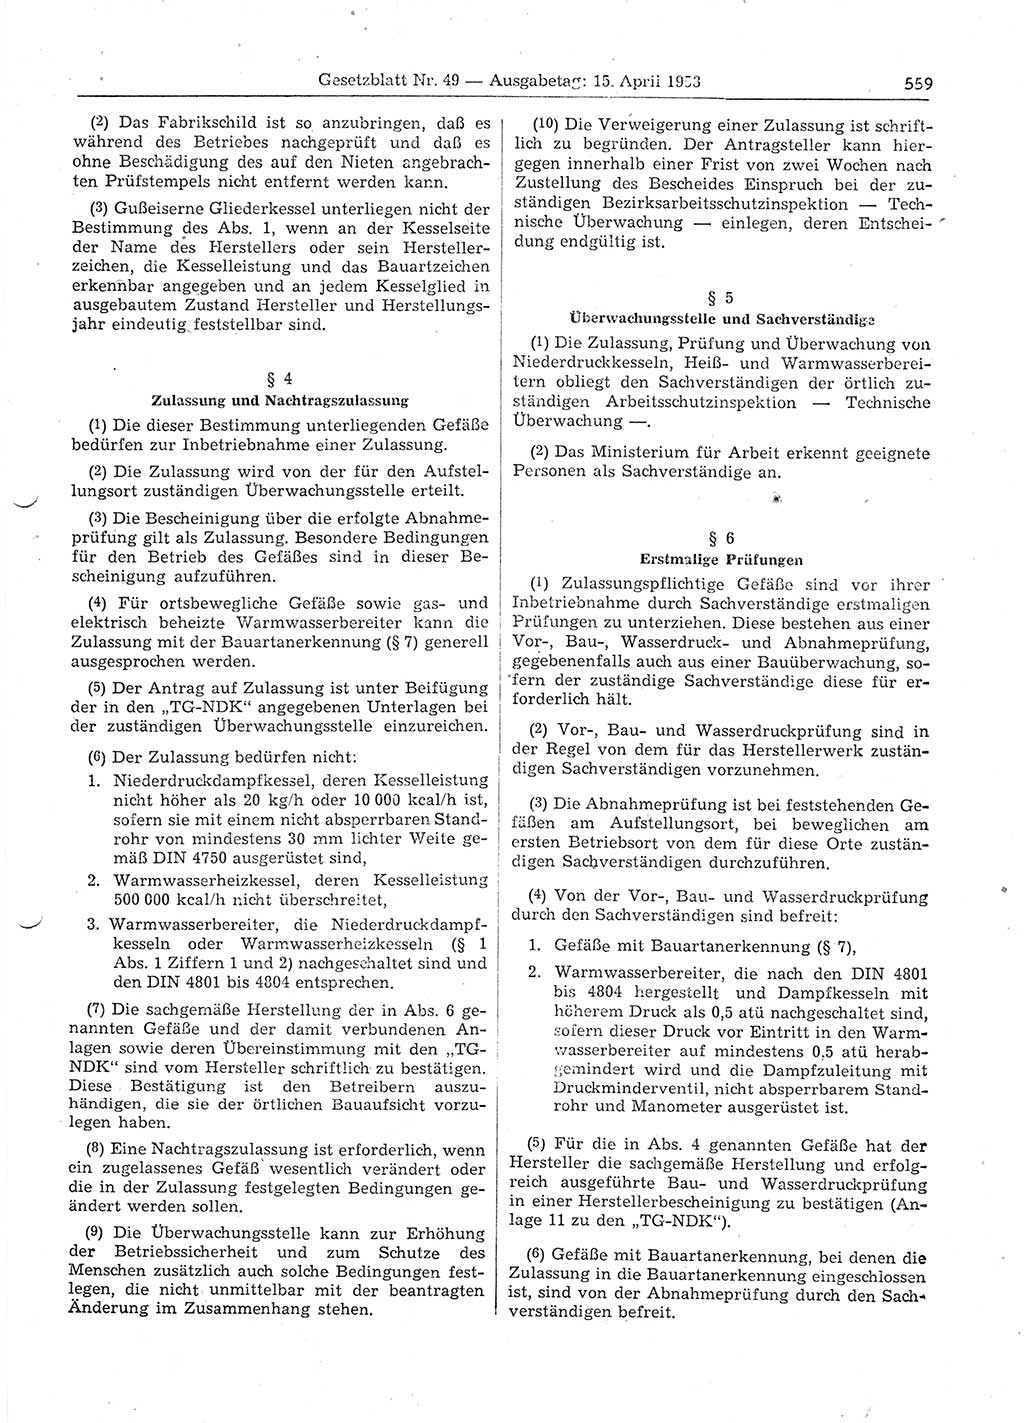 Gesetzblatt (GBl.) der Deutschen Demokratischen Republik (DDR) 1953, Seite 559 (GBl. DDR 1953, S. 559)